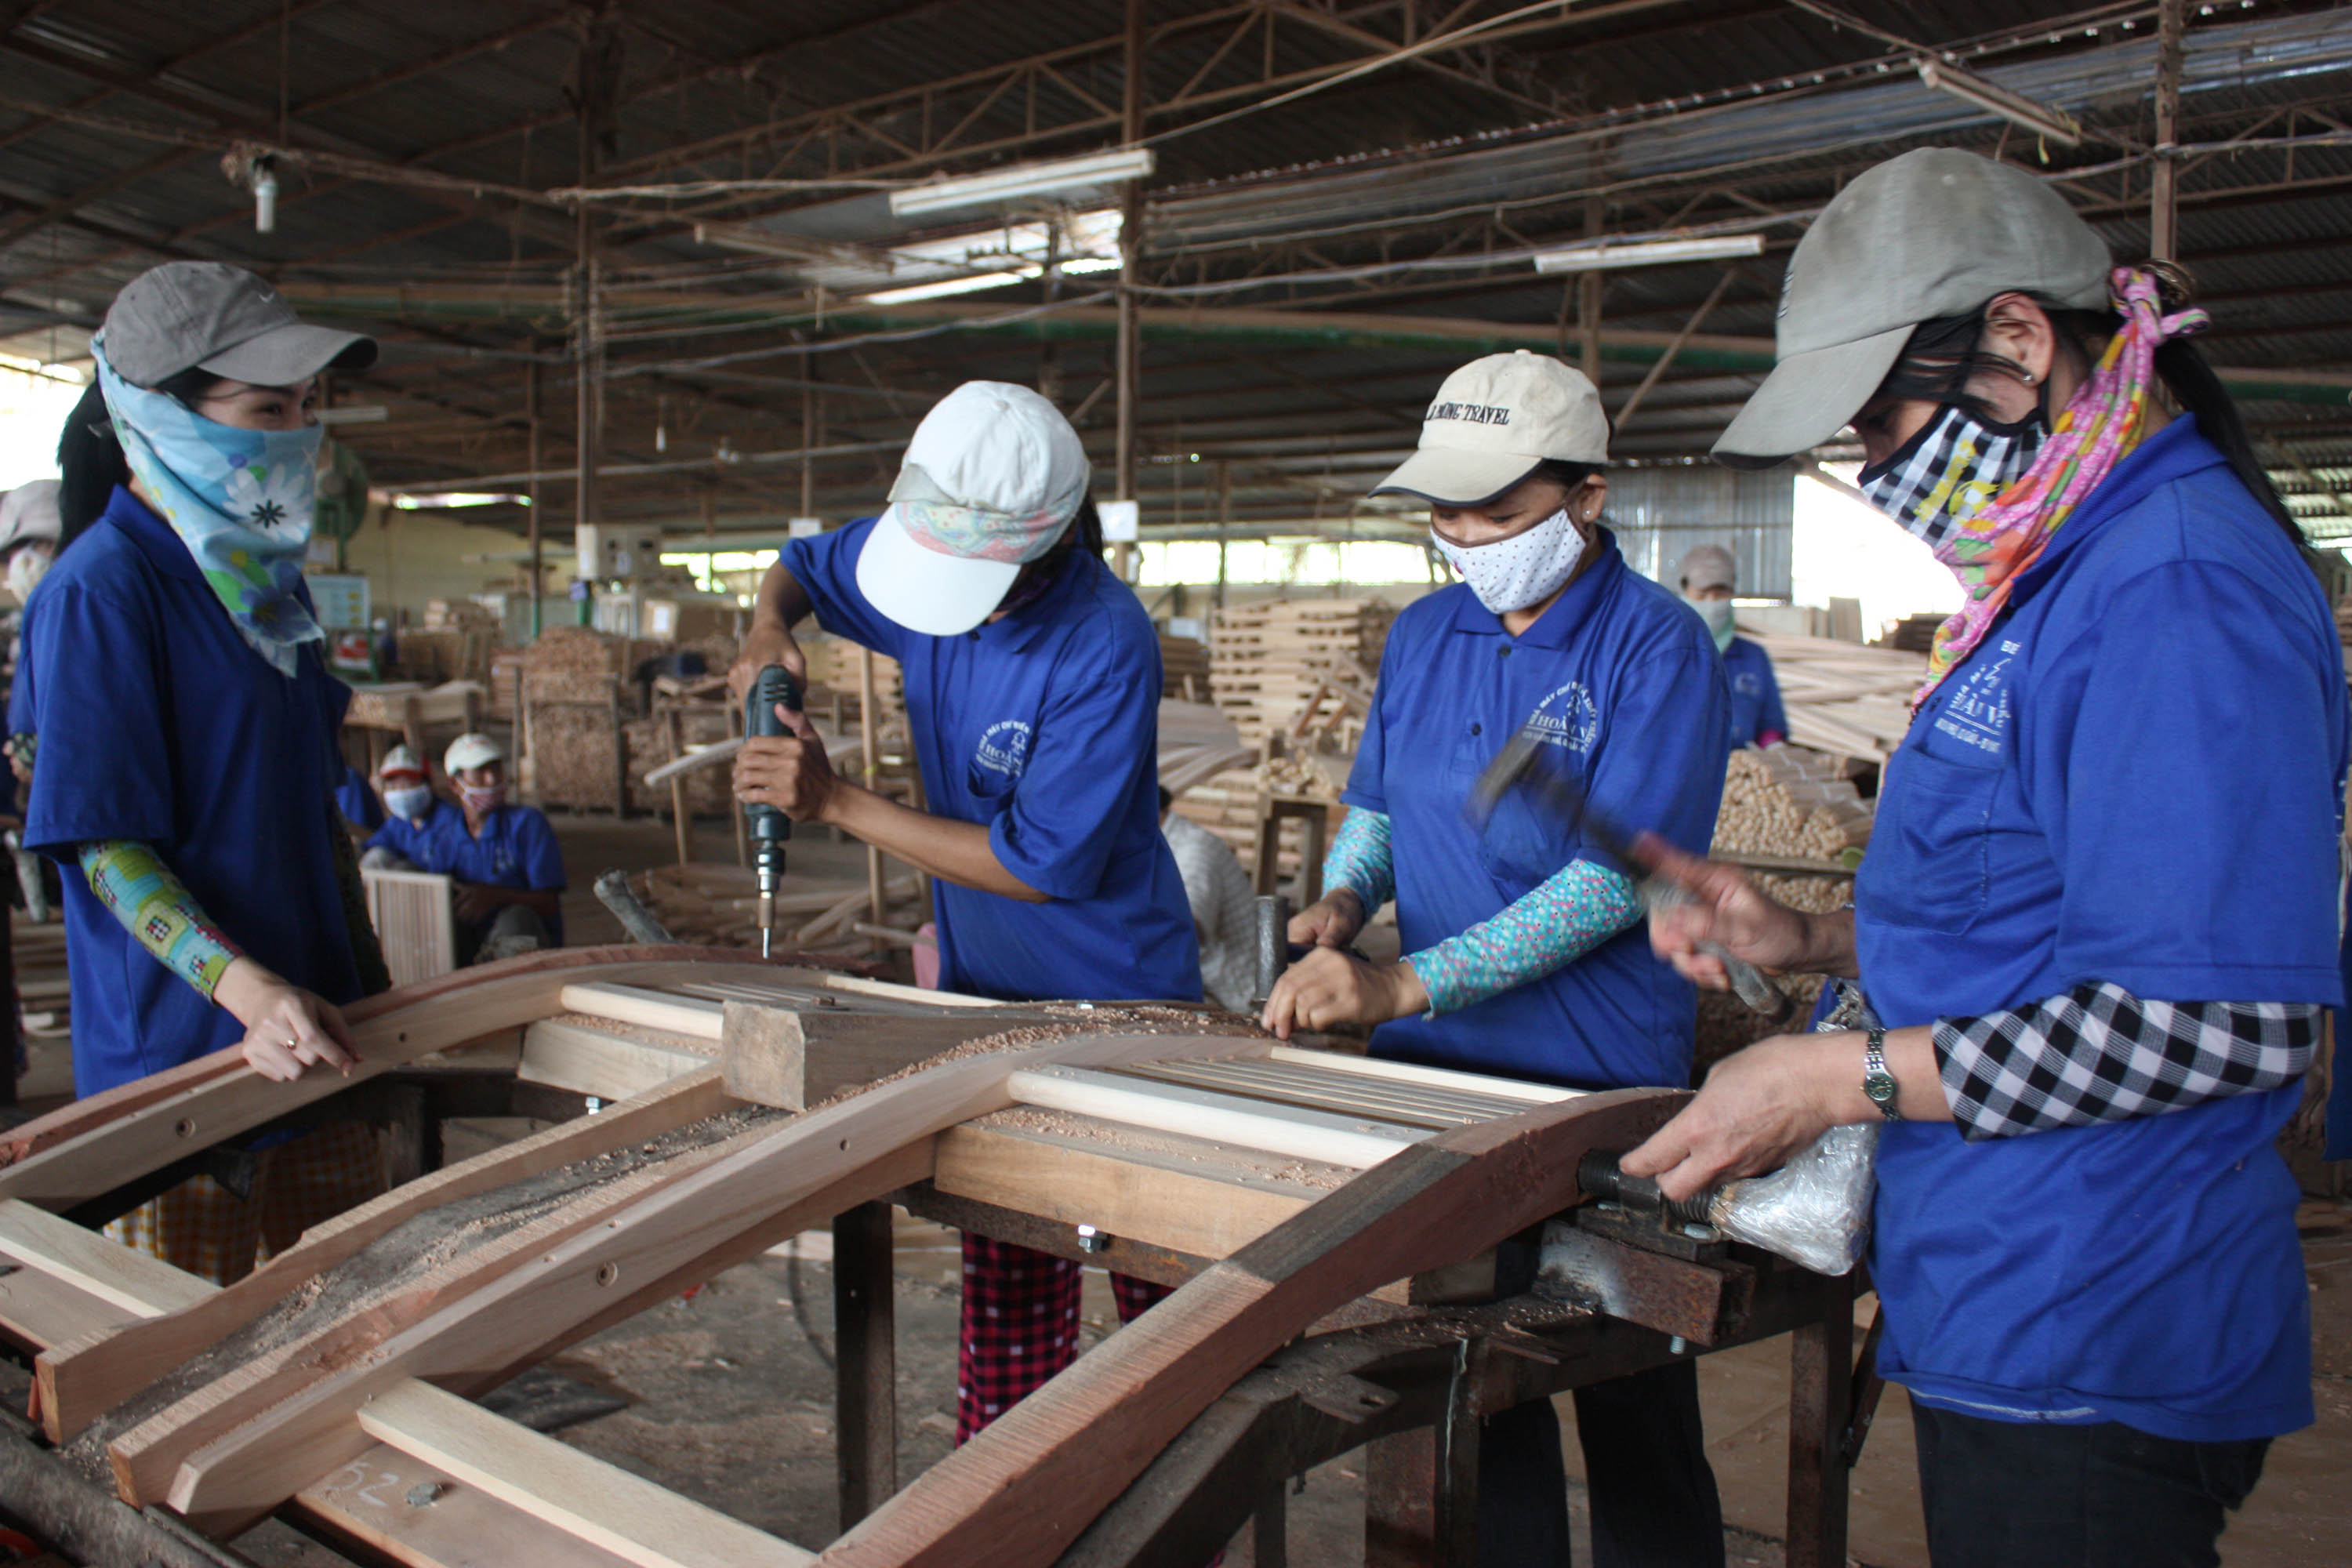 Hơn 1.100 lao động Việt Nam tại Đài Loan bỏ trốn mỗi tháng